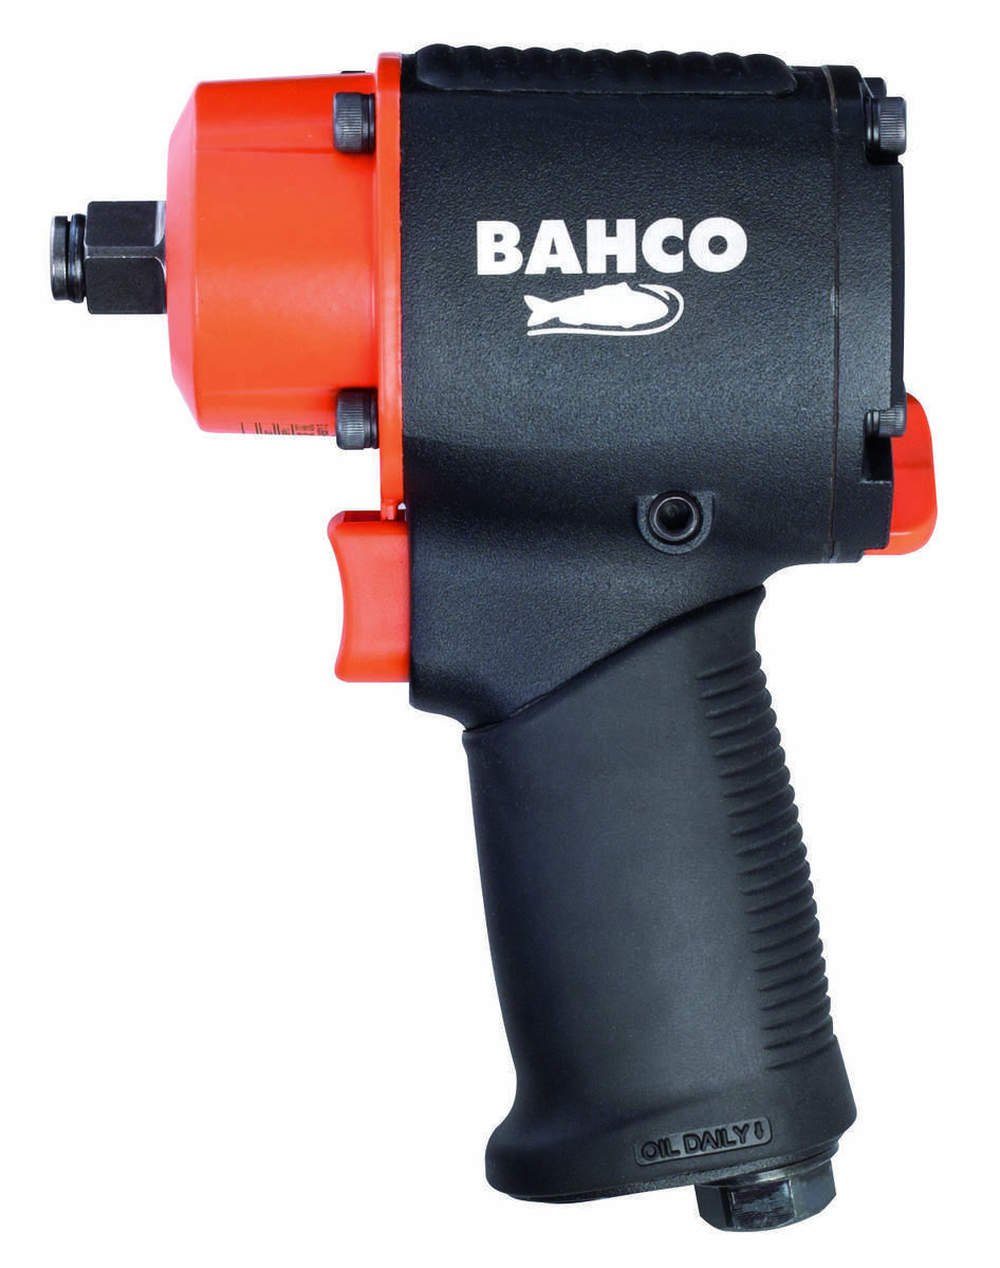 BAHCO Druckluft-Schlagschrauber BPC813, 10000 Doppelhammer-Schlagwerk, Rutschfester Gummigriff U/min, Nm, (Solo), 678